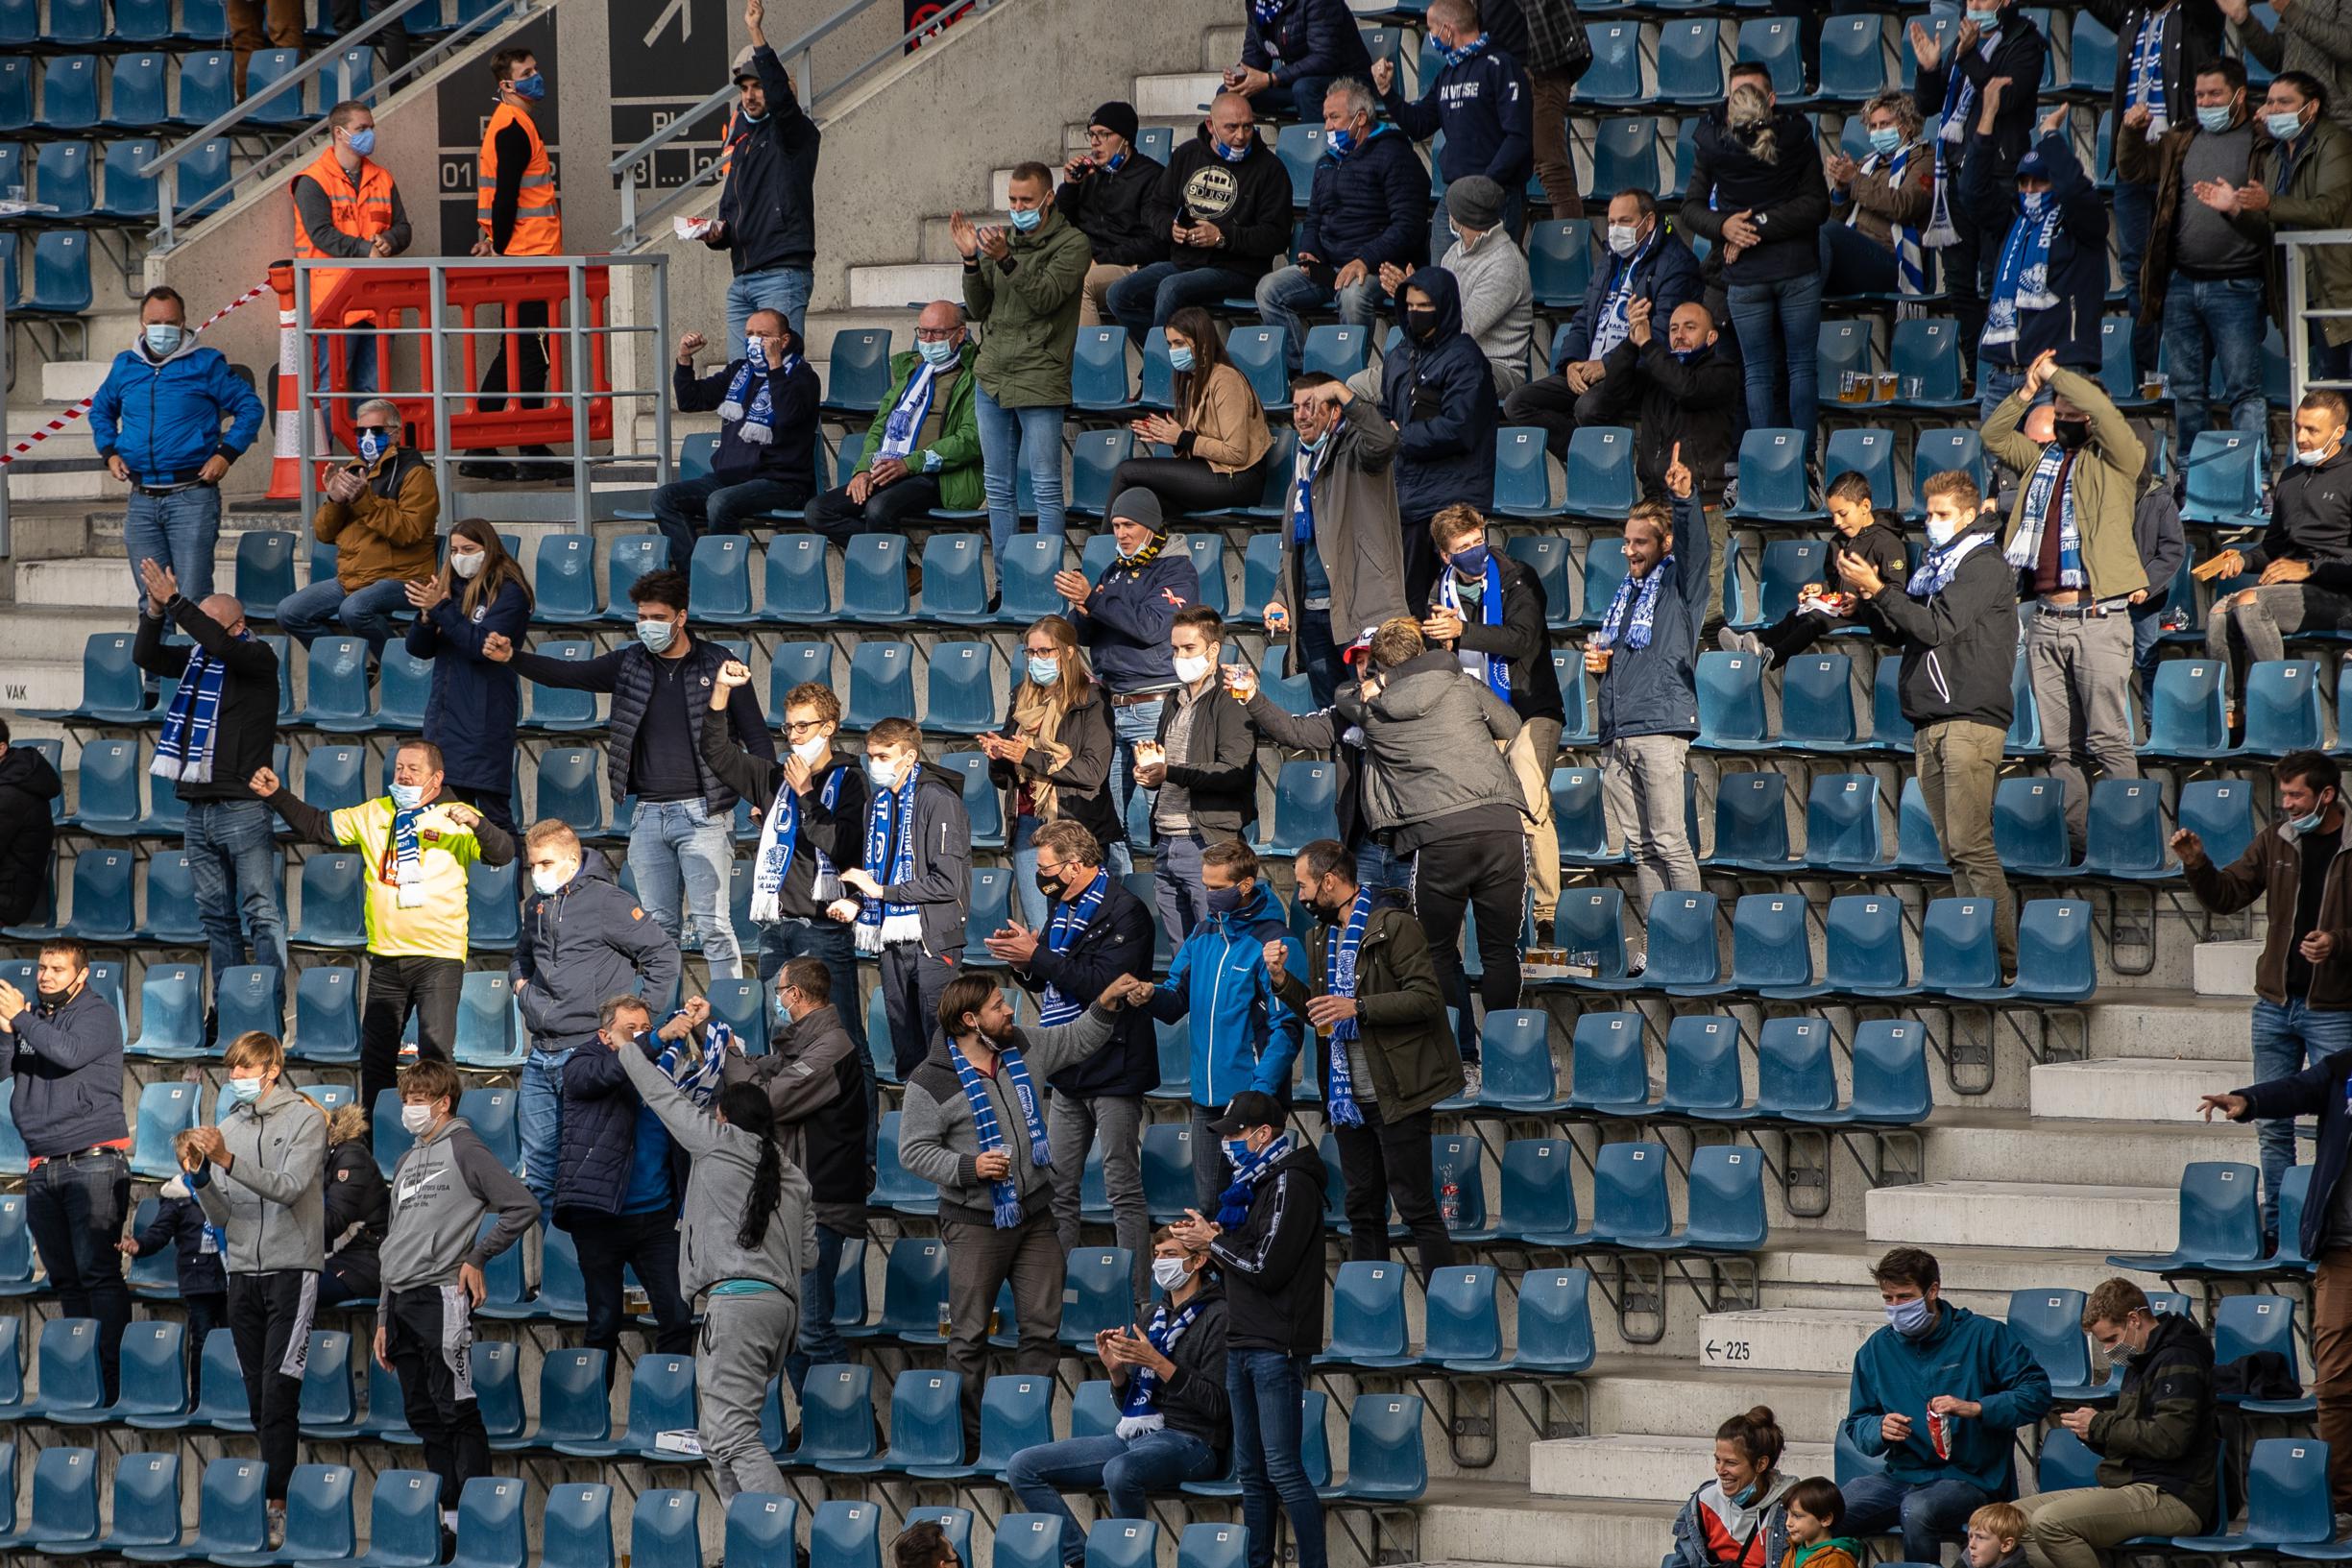 Supporters van Club Brugge zijn het meer dan beu: Is het bestuur